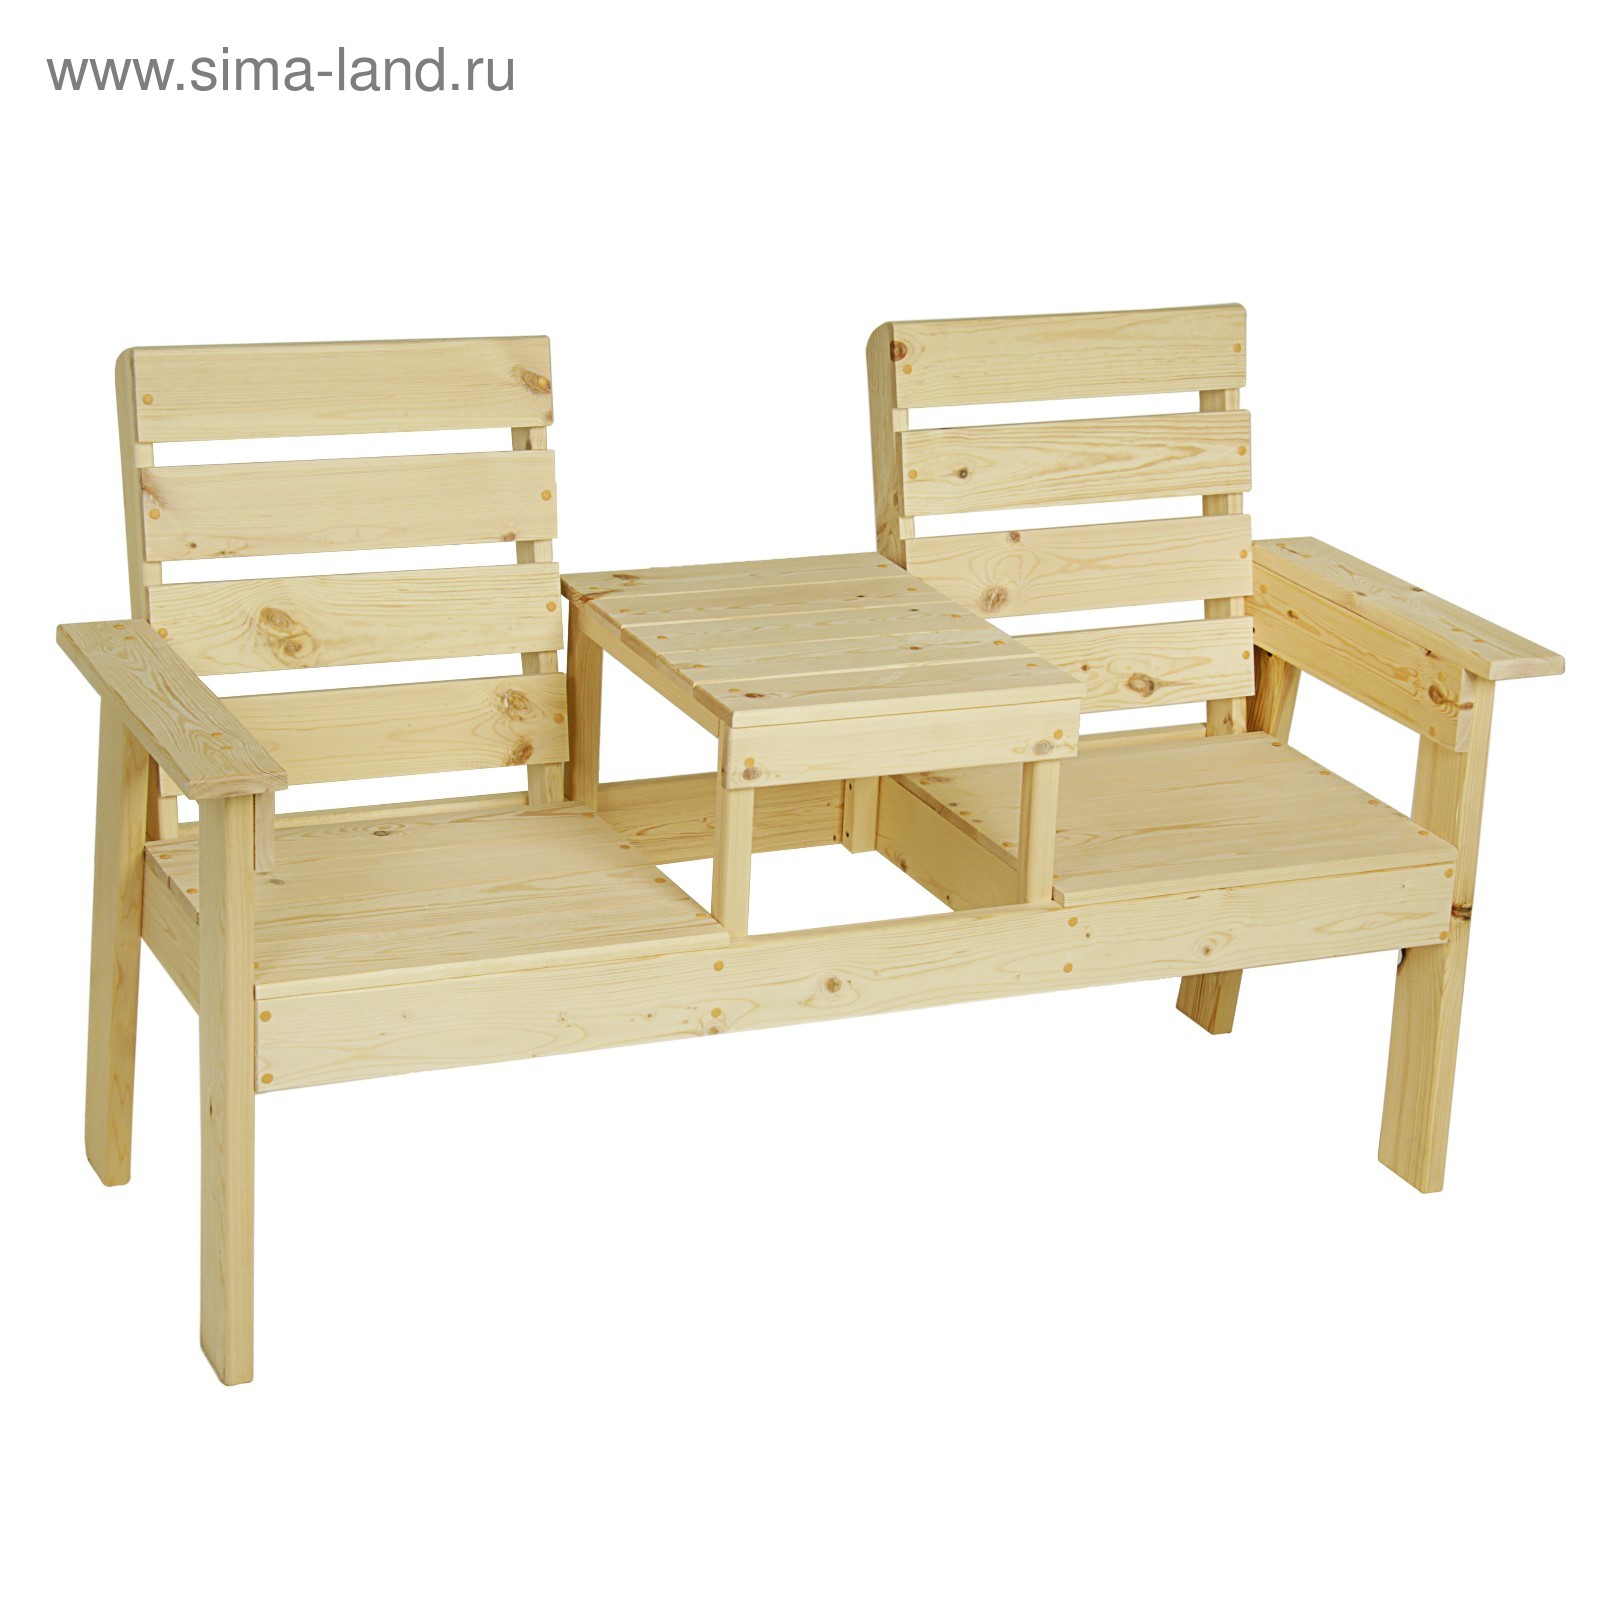 Садовые скамейки со столиком купить, сравнить цены в Москве - BLIZKO